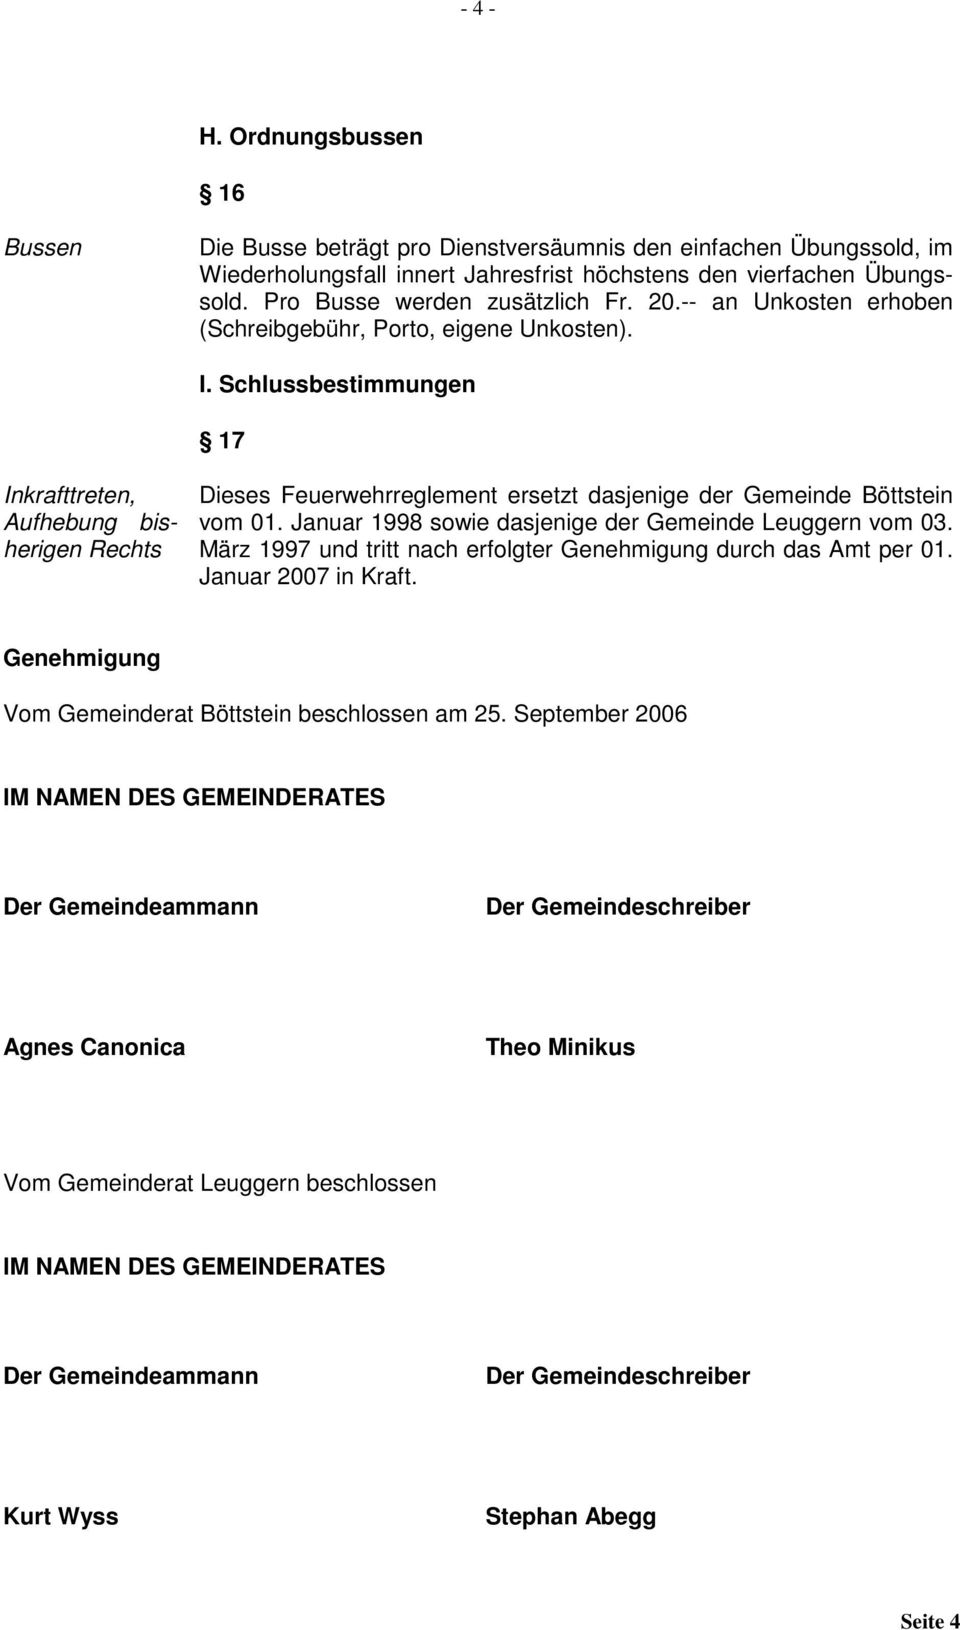 Schlussbestimmungen 17 Inkrafttreten, Aufhebung bisherigen Rechts Dieses Feuerwehrreglement ersetzt dasjenige der Gemeinde Böttstein vom 01. Januar 1998 sowie dasjenige der Gemeinde Leuggern vom 03.